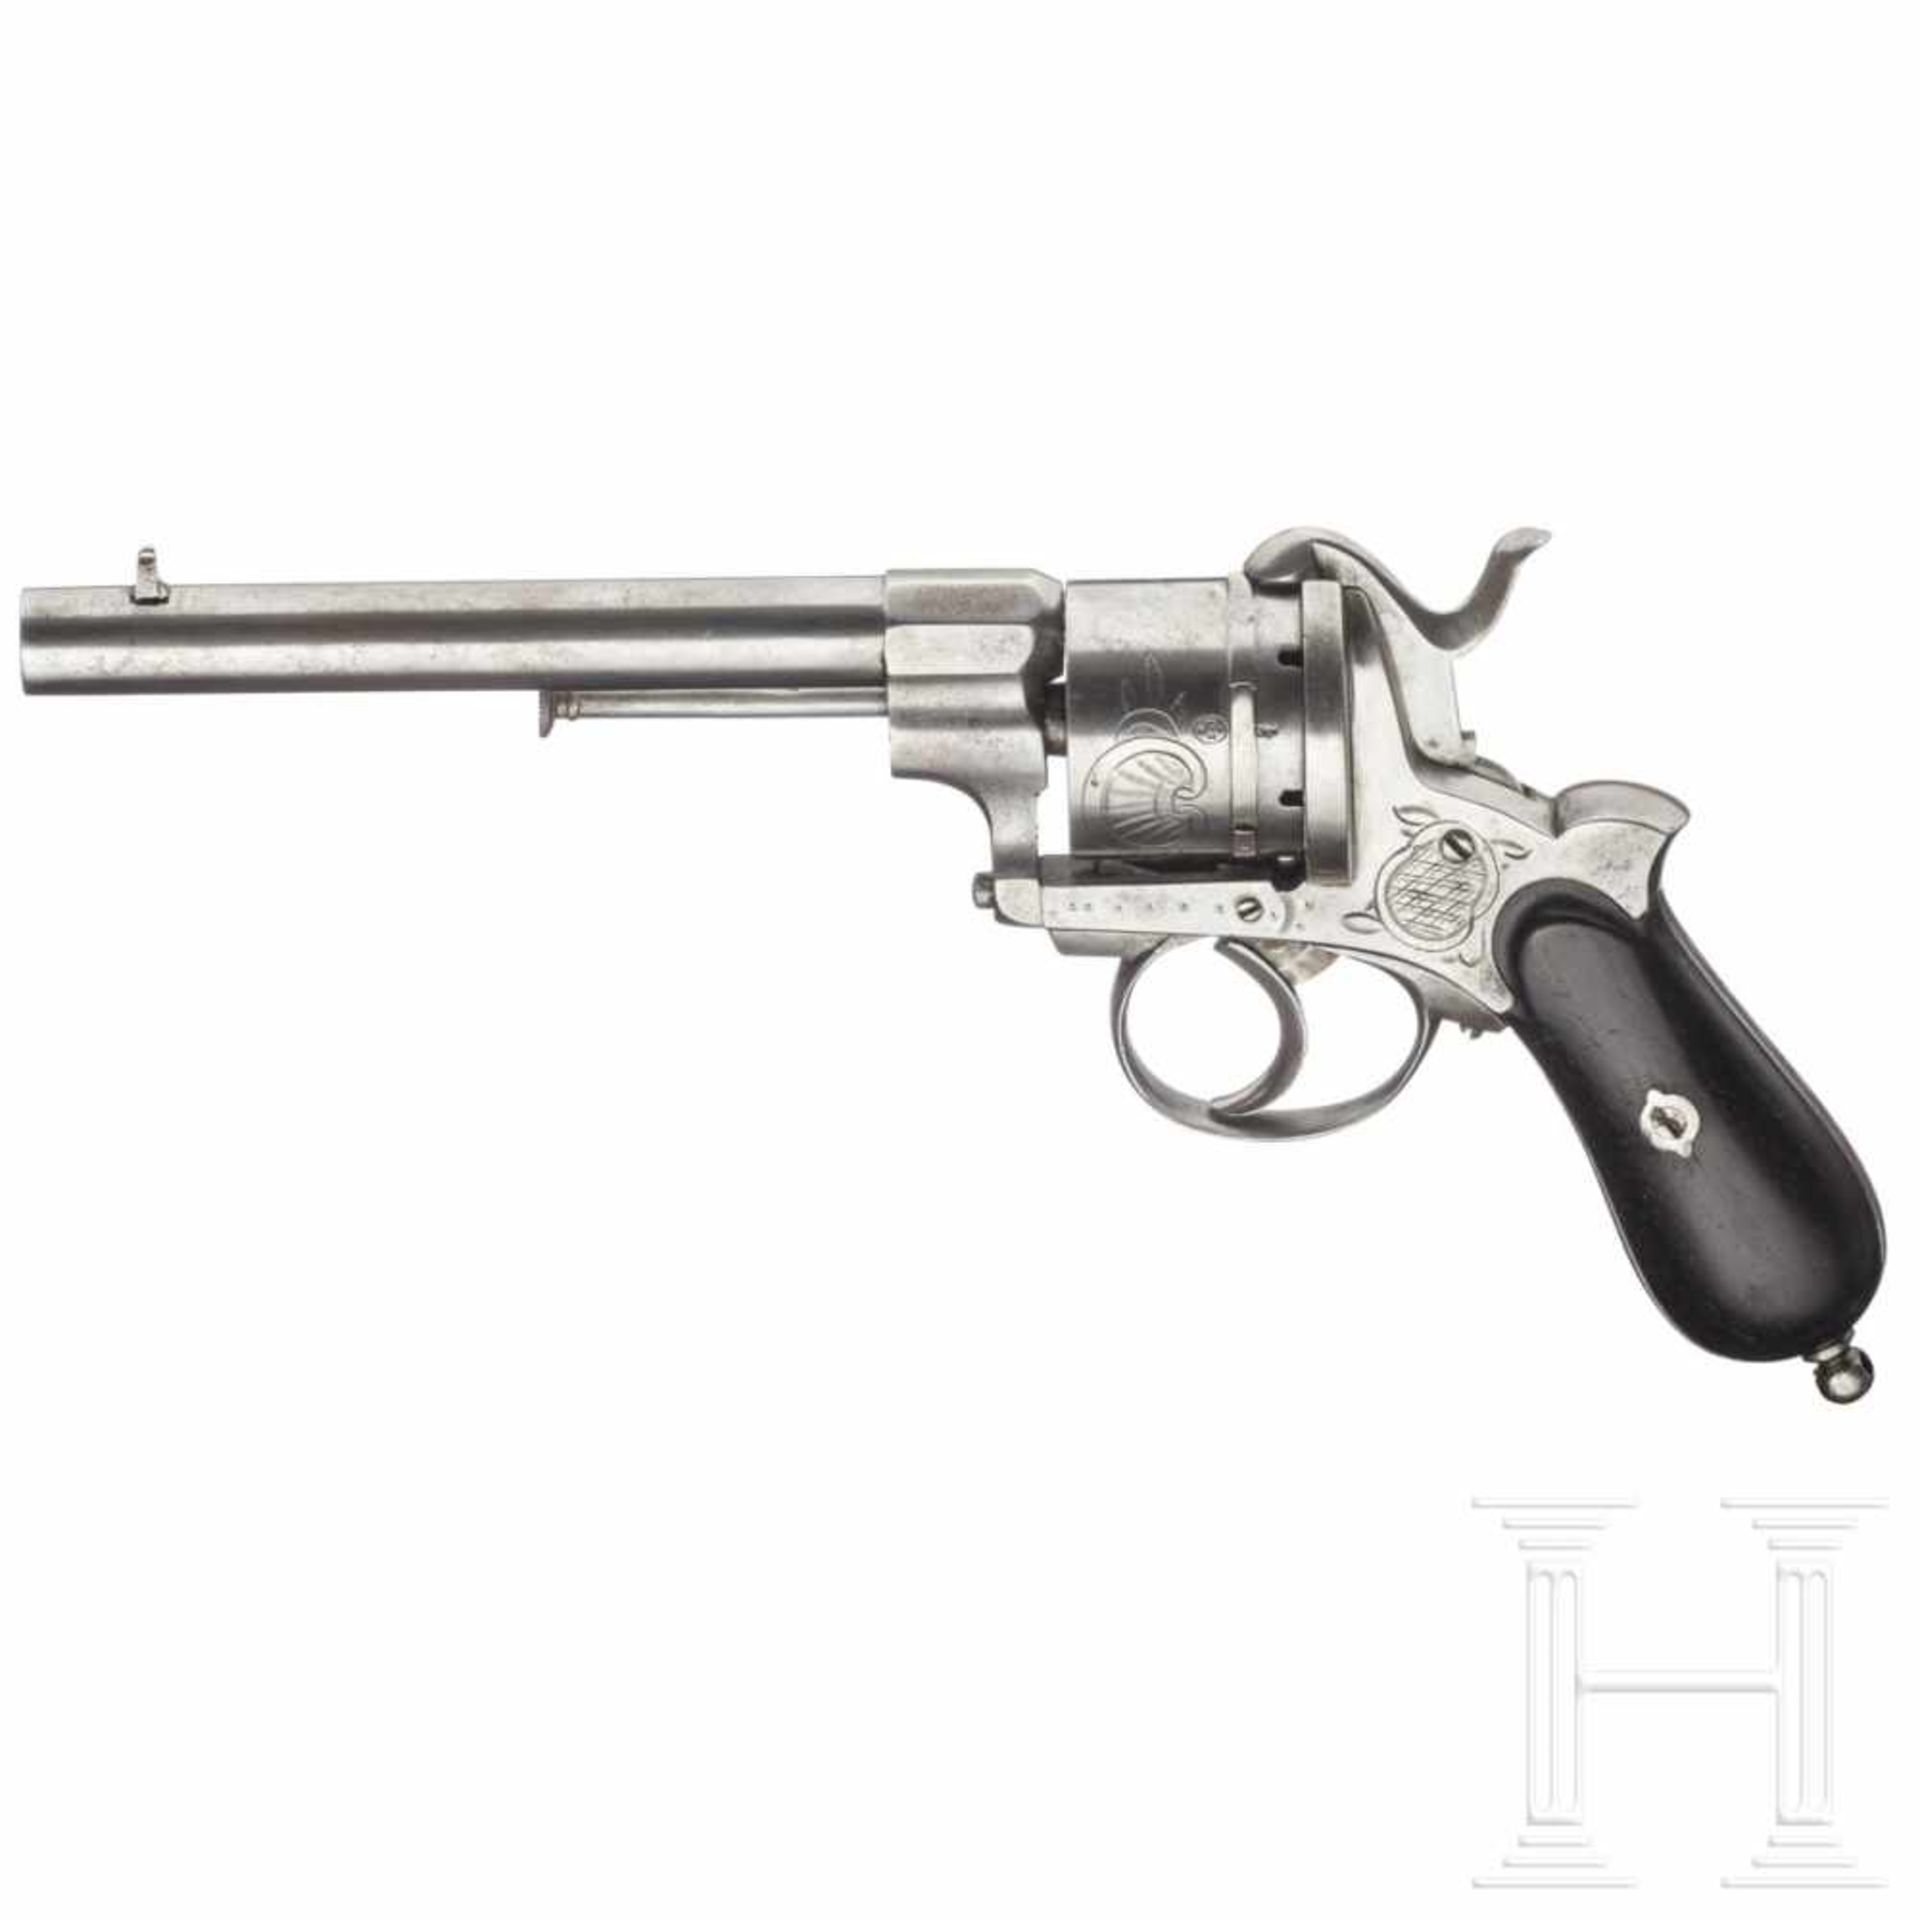 A Belgian pinfire revolver, ca. 1860Kal. 11 mm Lefaucheux, ohne Nr. Gezogener, an der Basis - Bild 2 aus 2